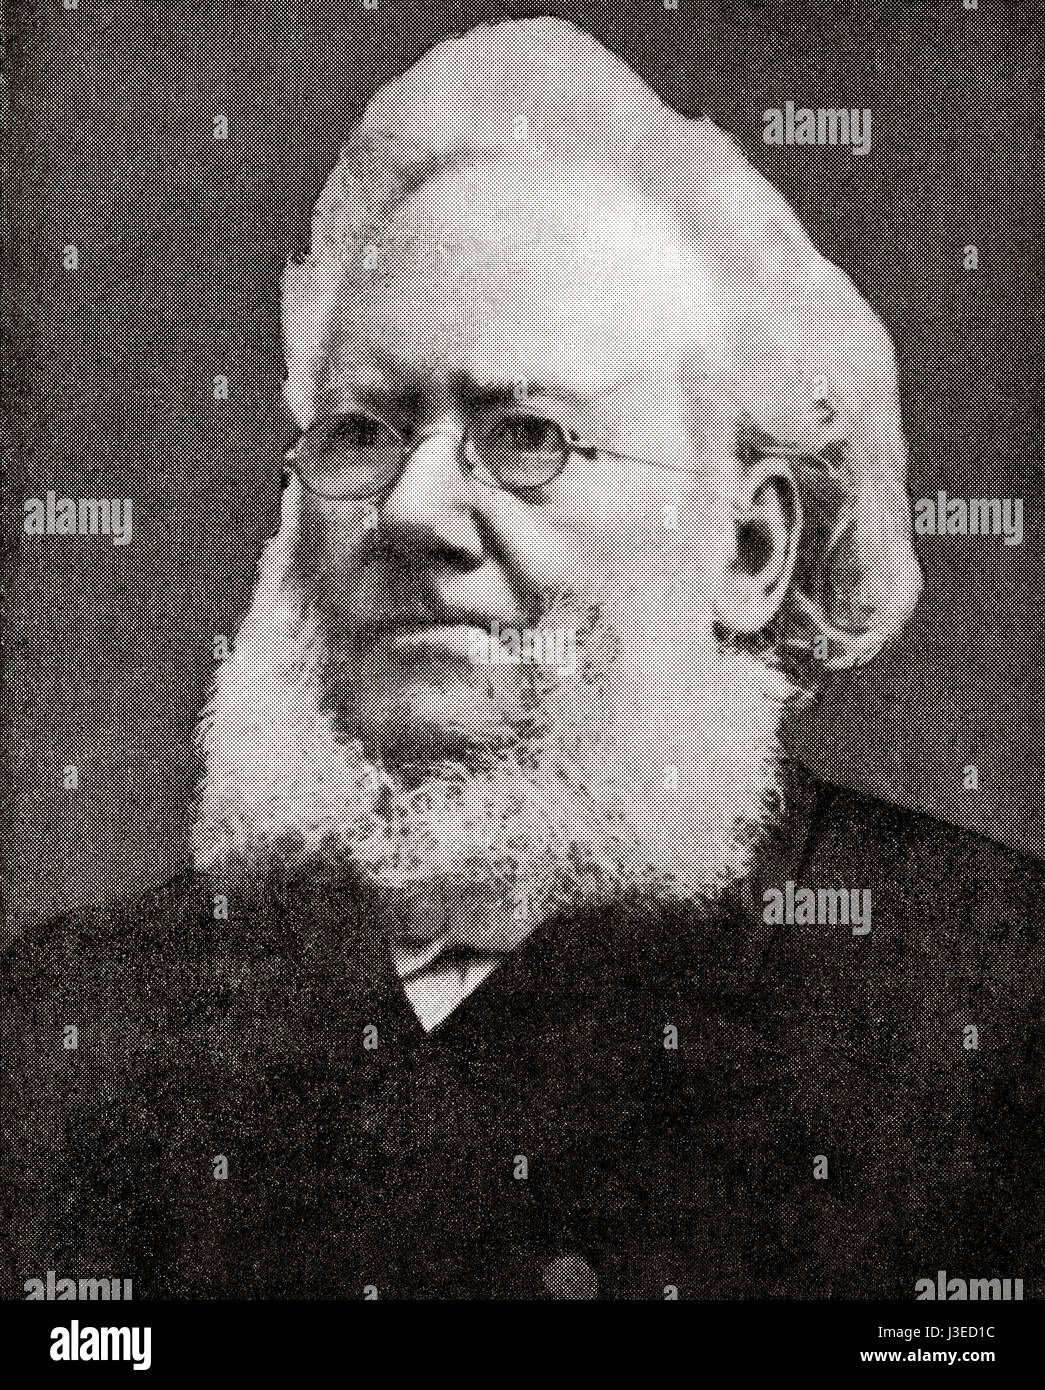 Henrik Johan Ibsen, 1828-1906. 19. Jahrhundert norwegischer Dramatiker, Theaterregisseur und Dichter.  Hutchinson Geschichte der Nationen veröffentlichte 1915. Stockfoto